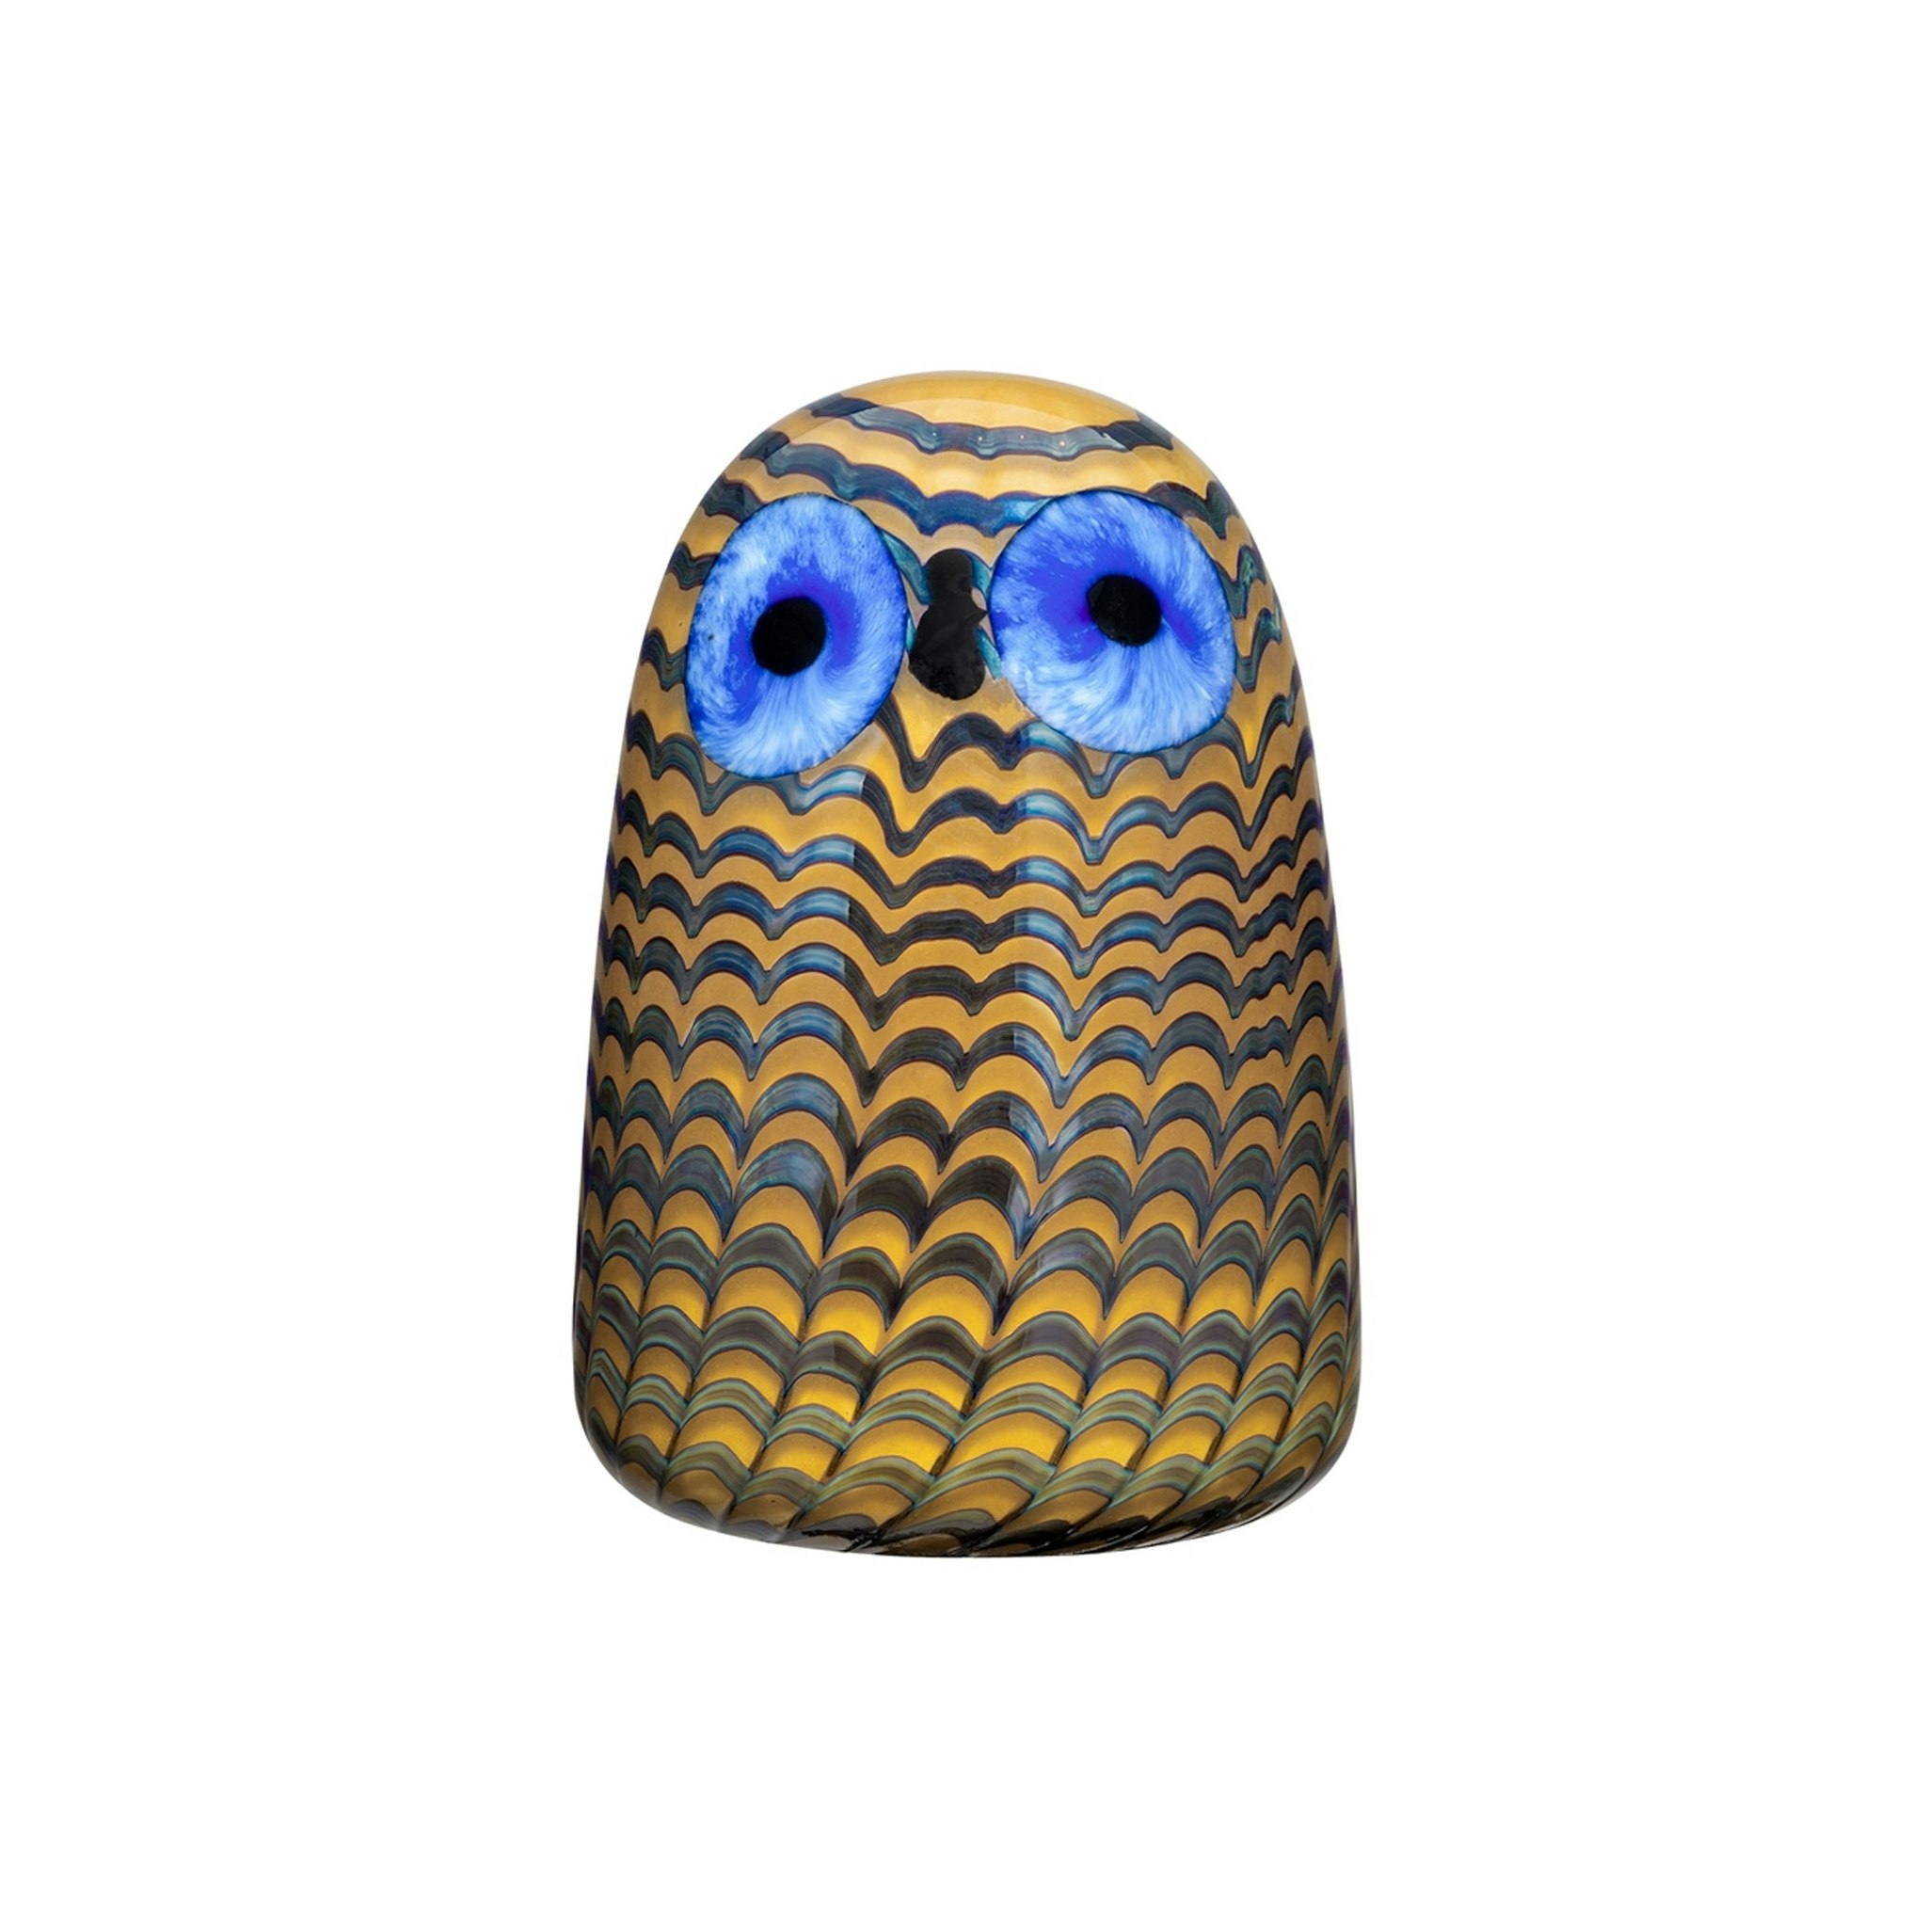 Owlet by Iittala